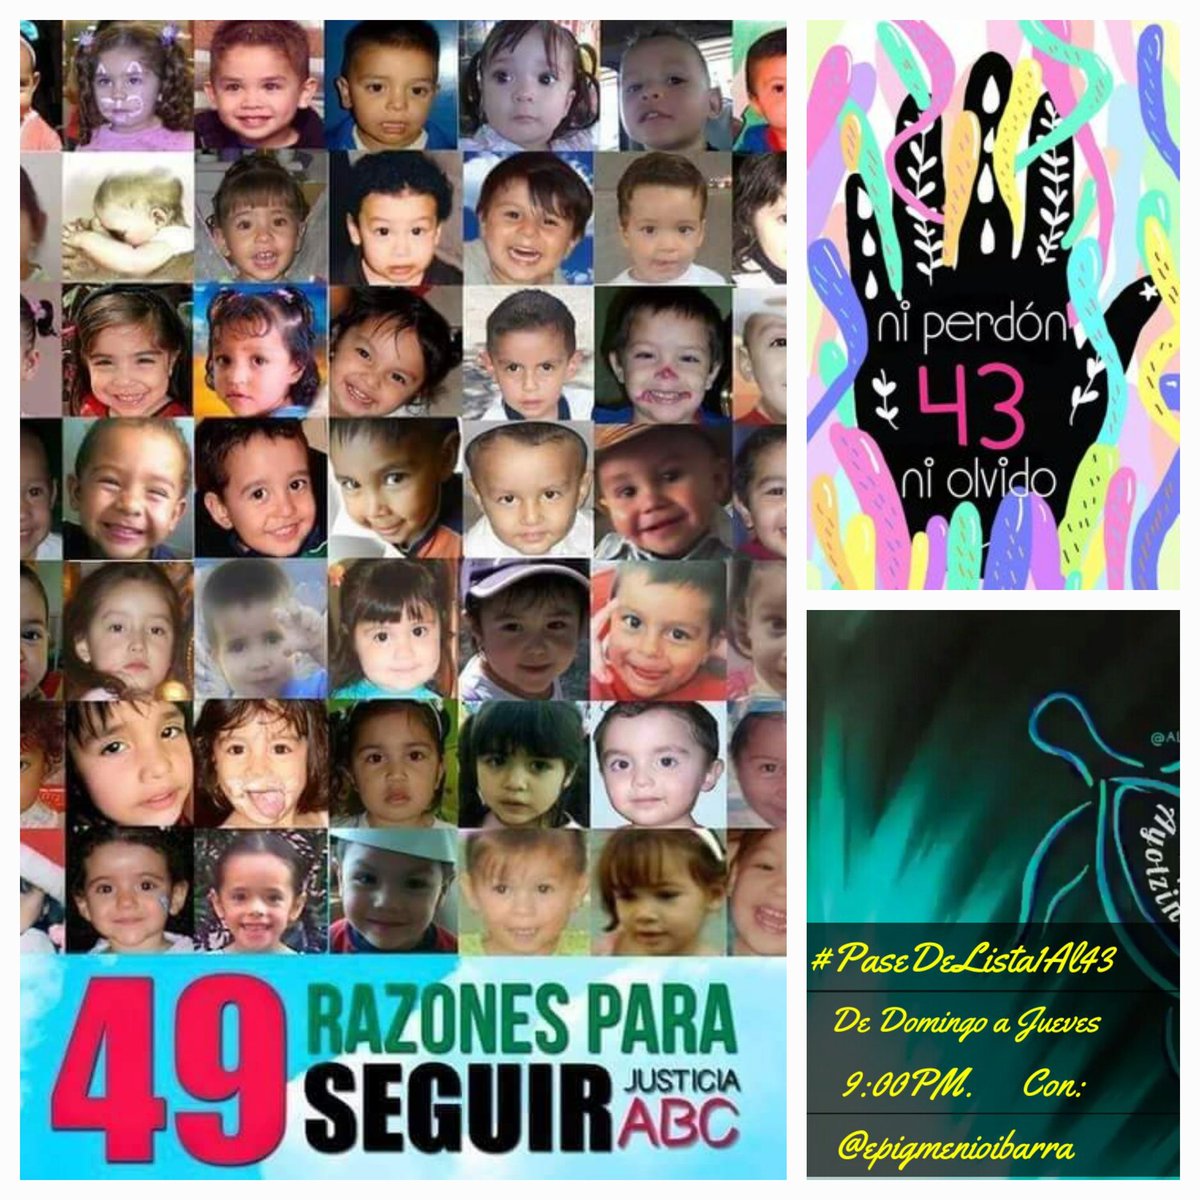 #PaseDeListaDel1al43
@Drago237 
#GuarderíaABC 
#Ayotzinapa